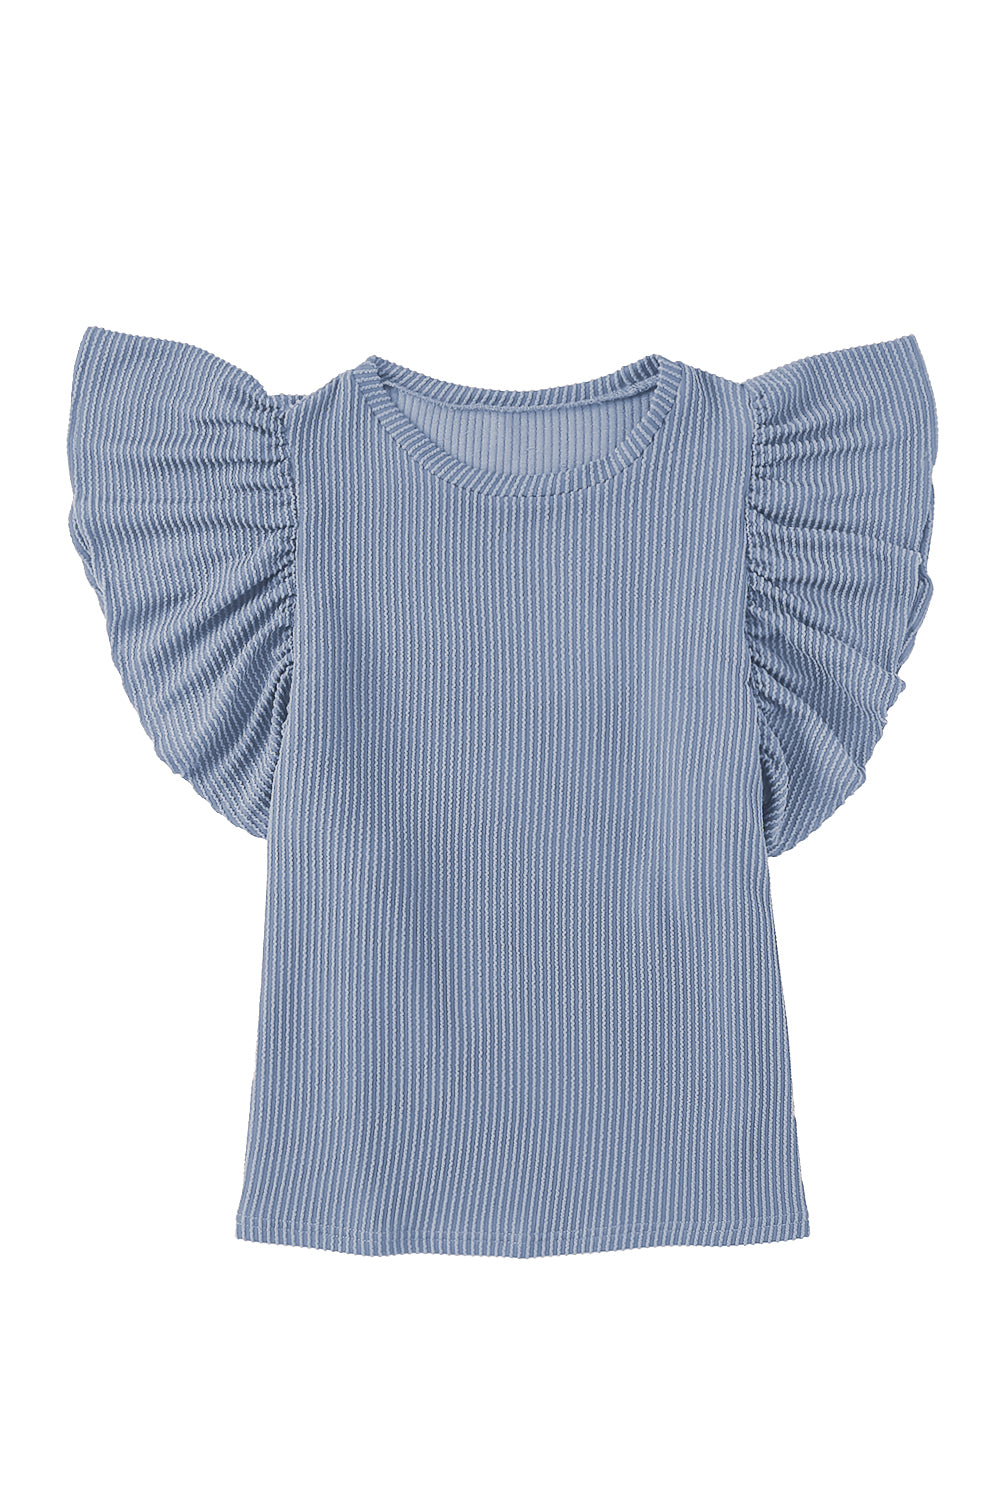 Himmelblaues, kurzärmliges, geripptes Strick-T-Shirt mit Rüschen